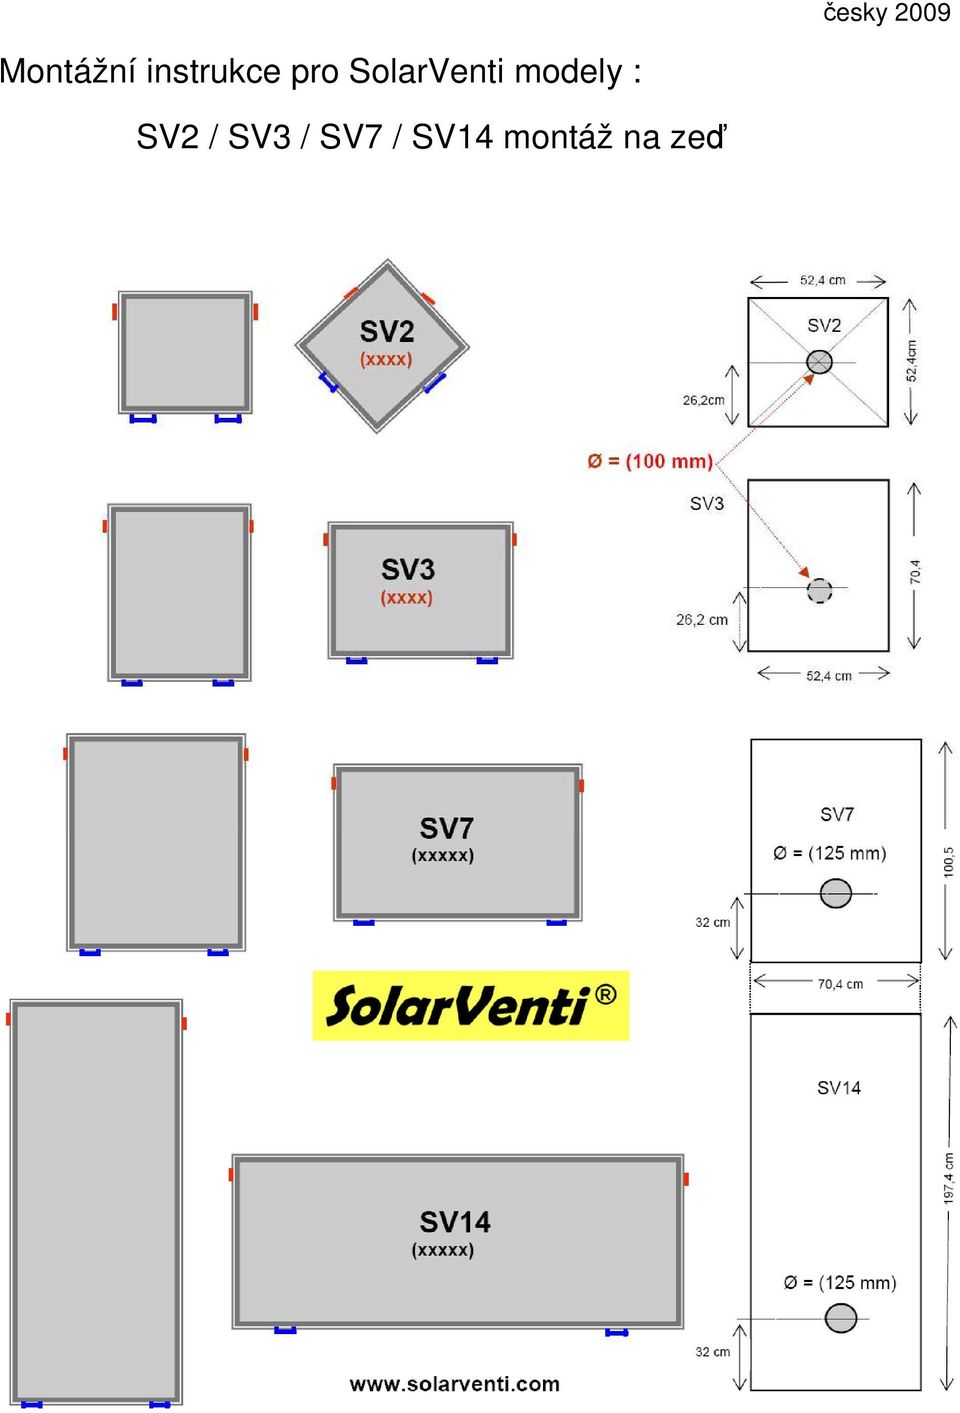 SolarVenti modely :